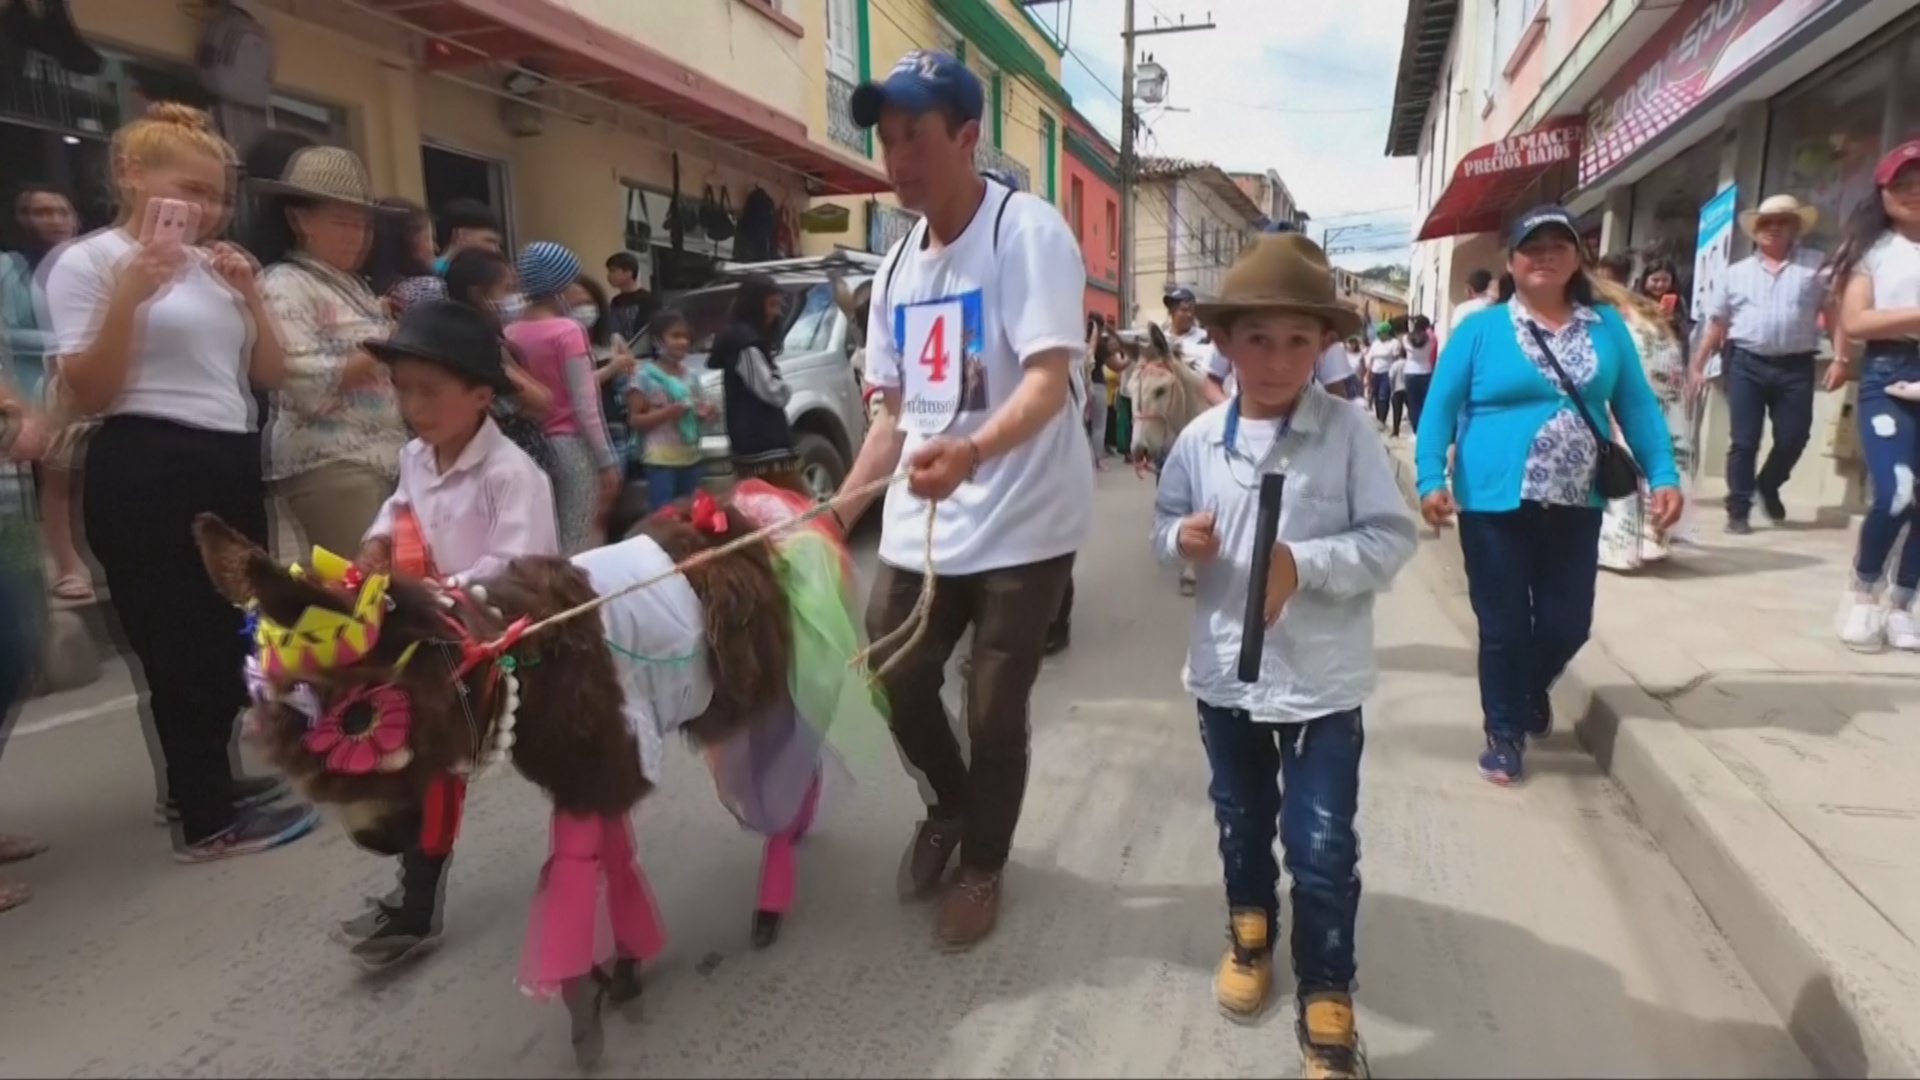 Разряженные ослы прошлись по улицам колумбийского городка